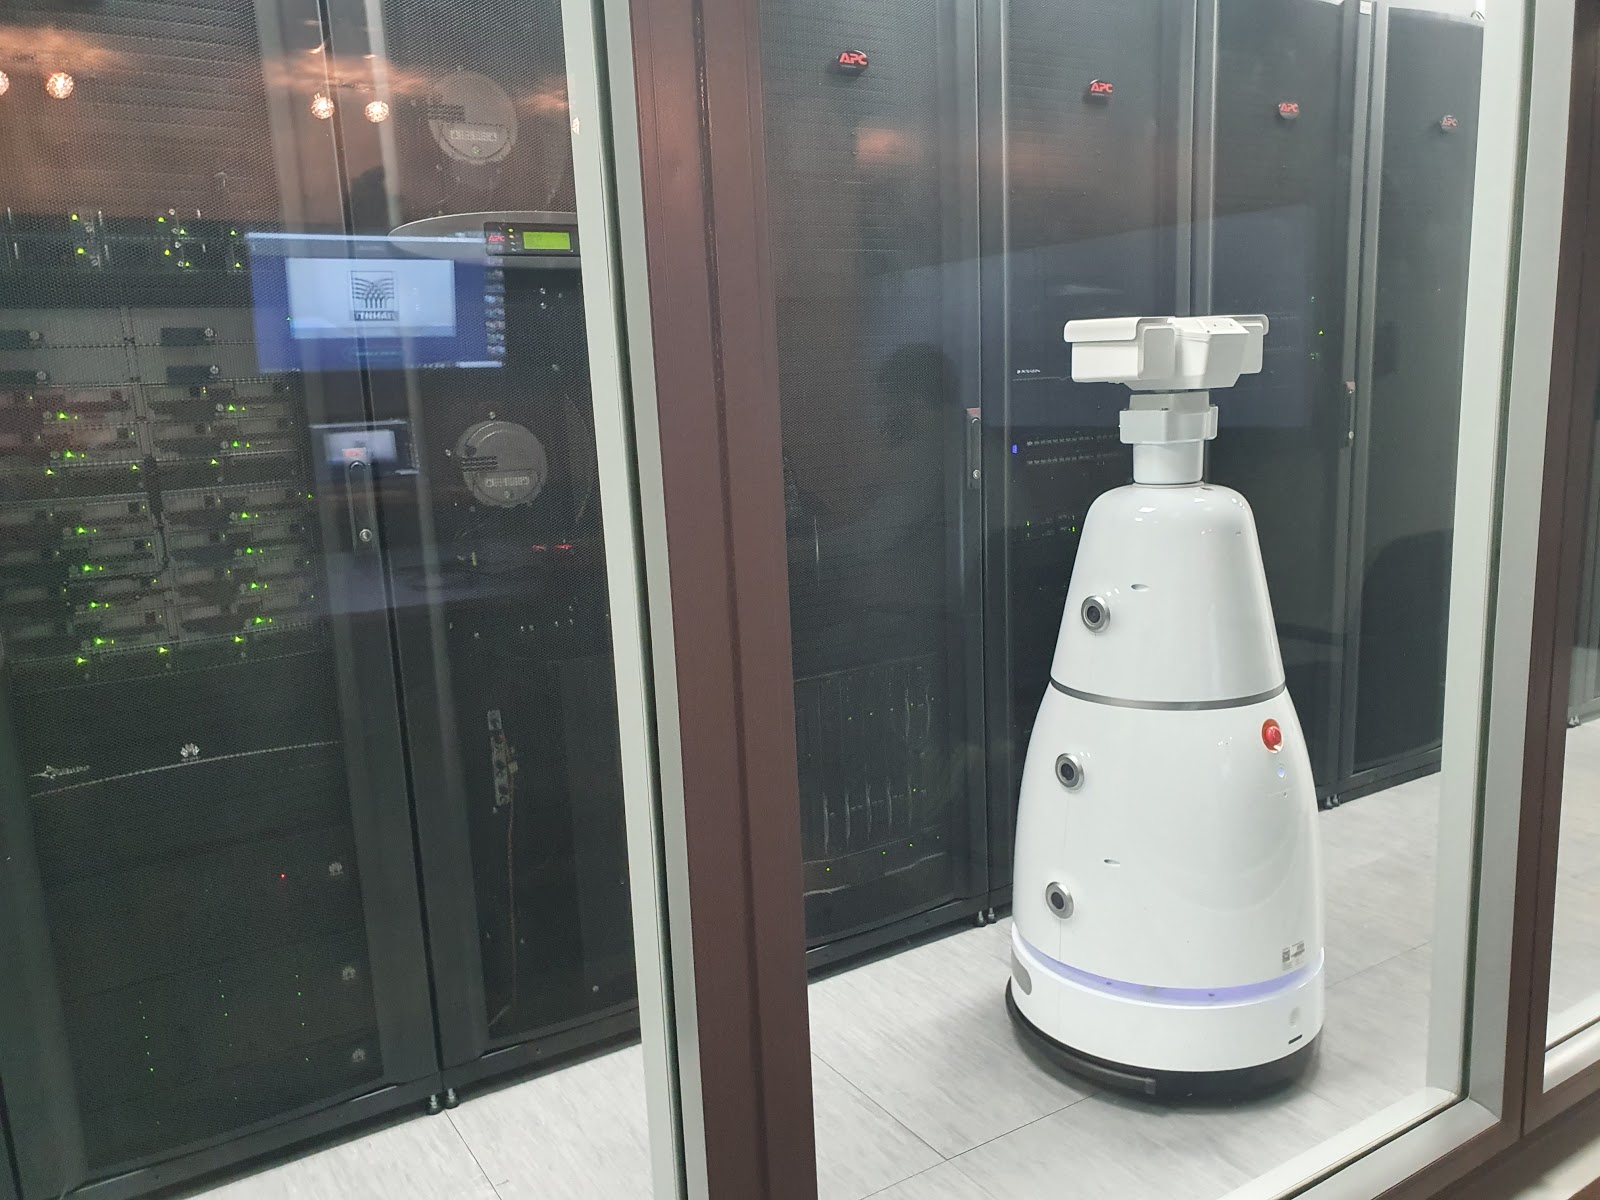 Будущее наступает: китайские роботы приехали в Россию - 17